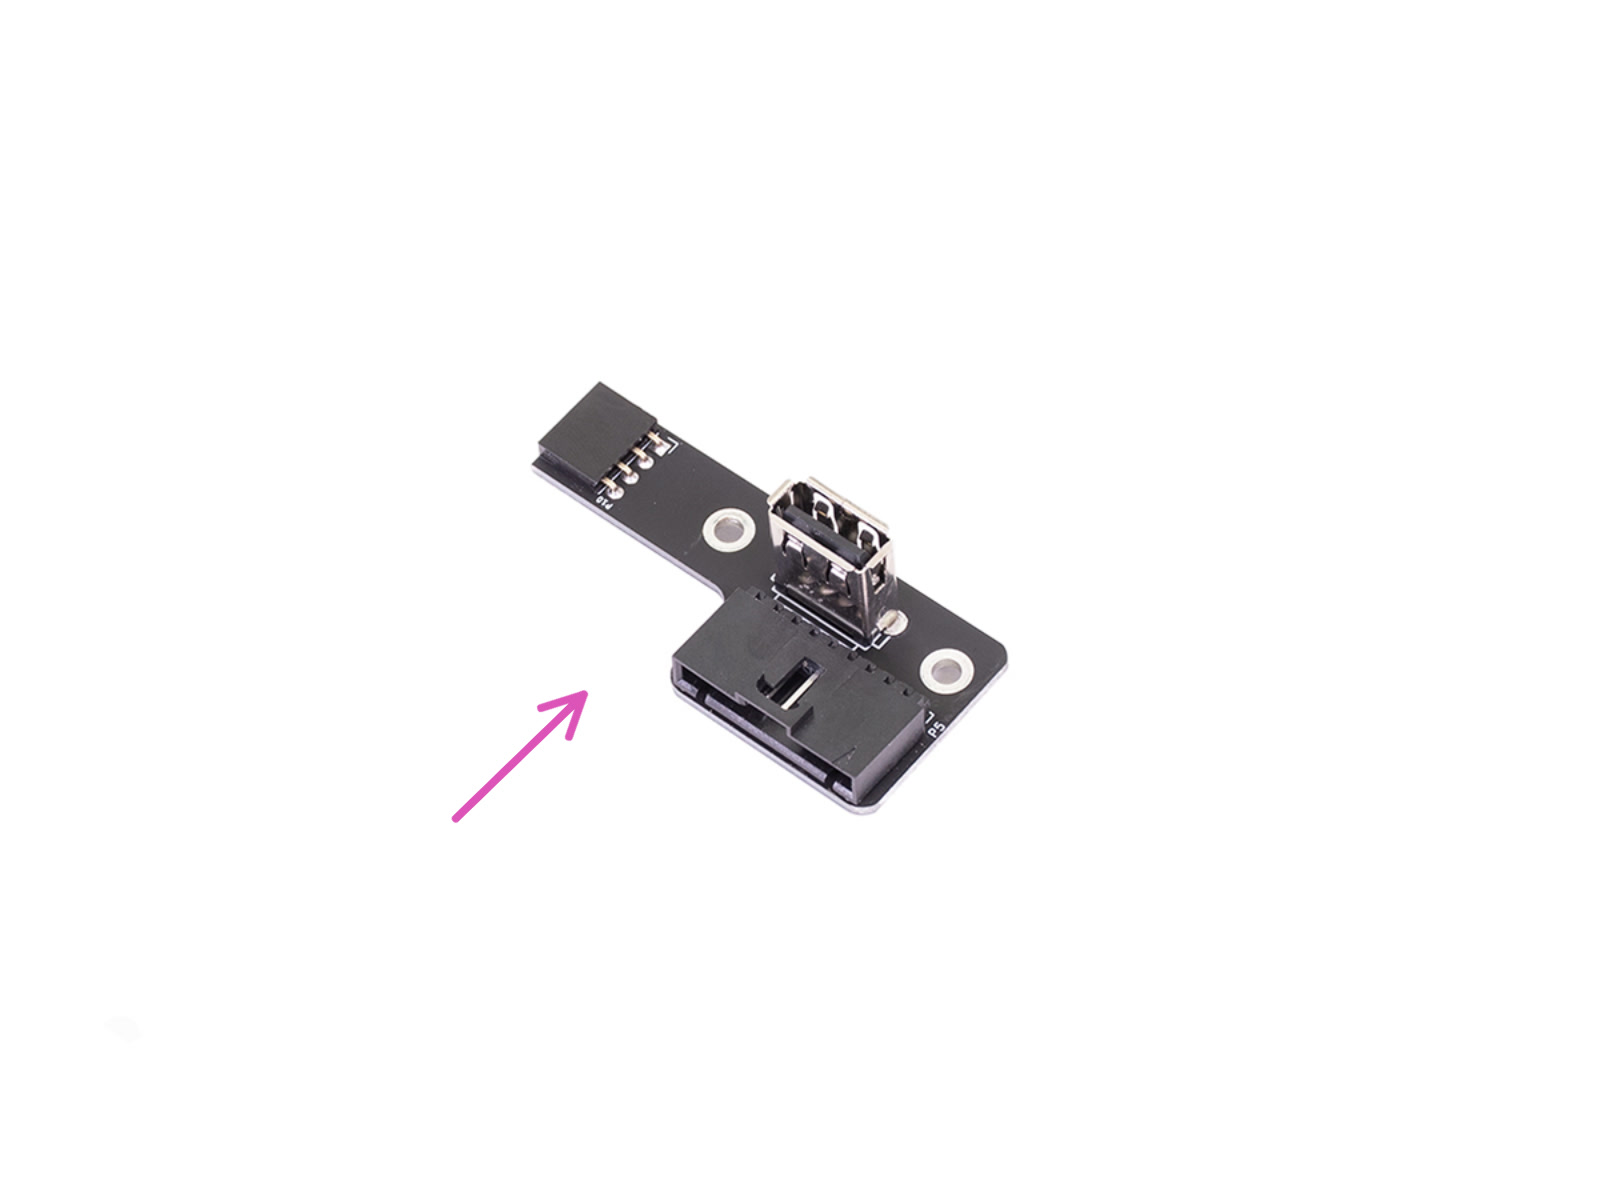 Nuovo connettore USB - preparazione parti (Versione 3.0)